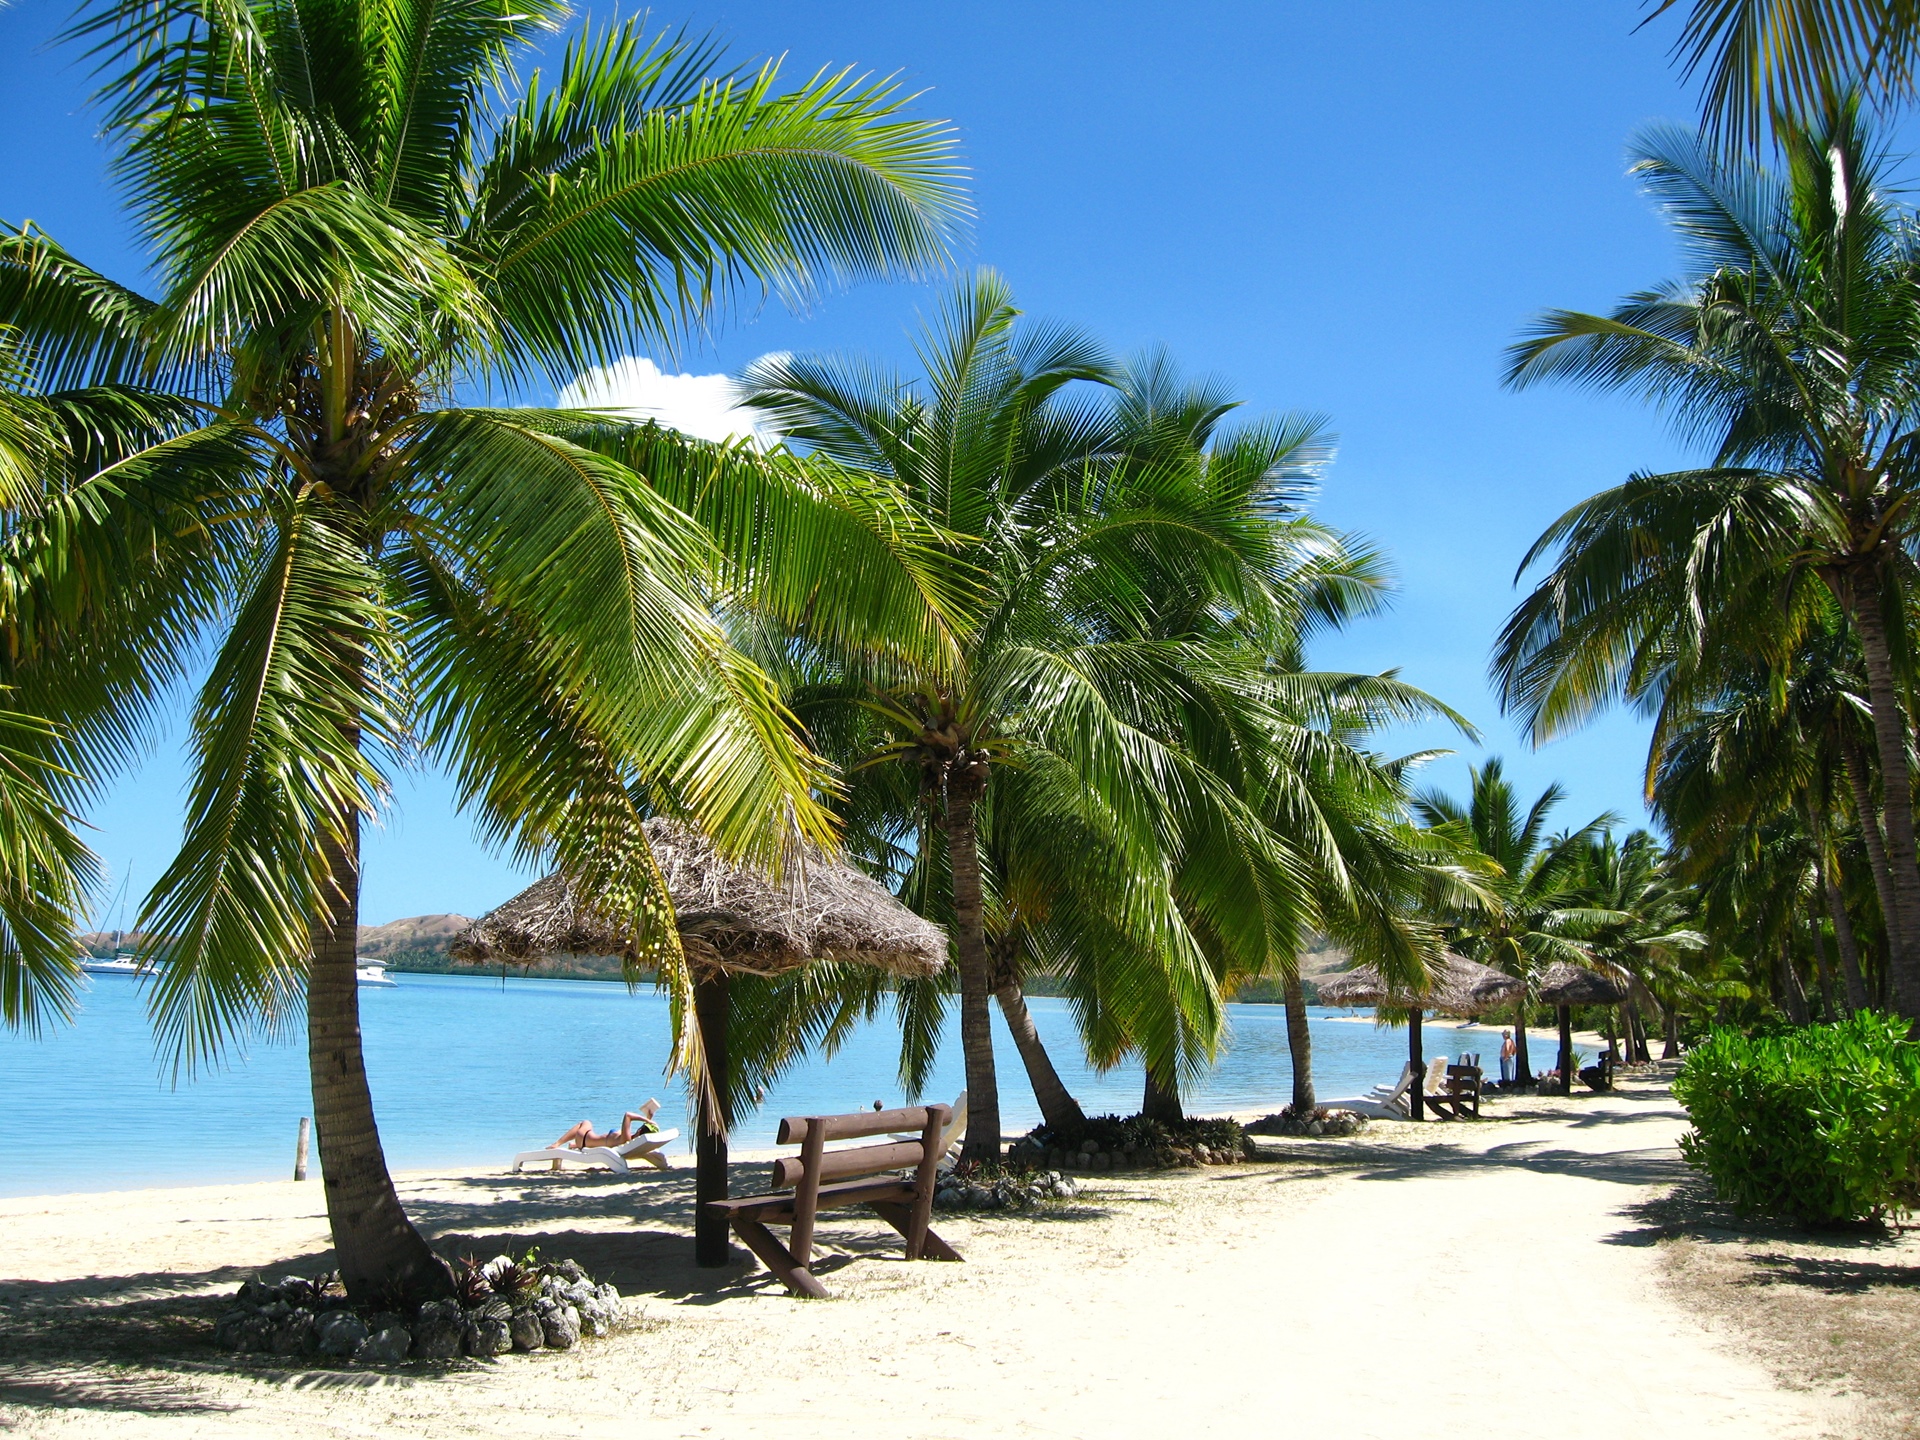 Plan a getaway at Fiji Islands